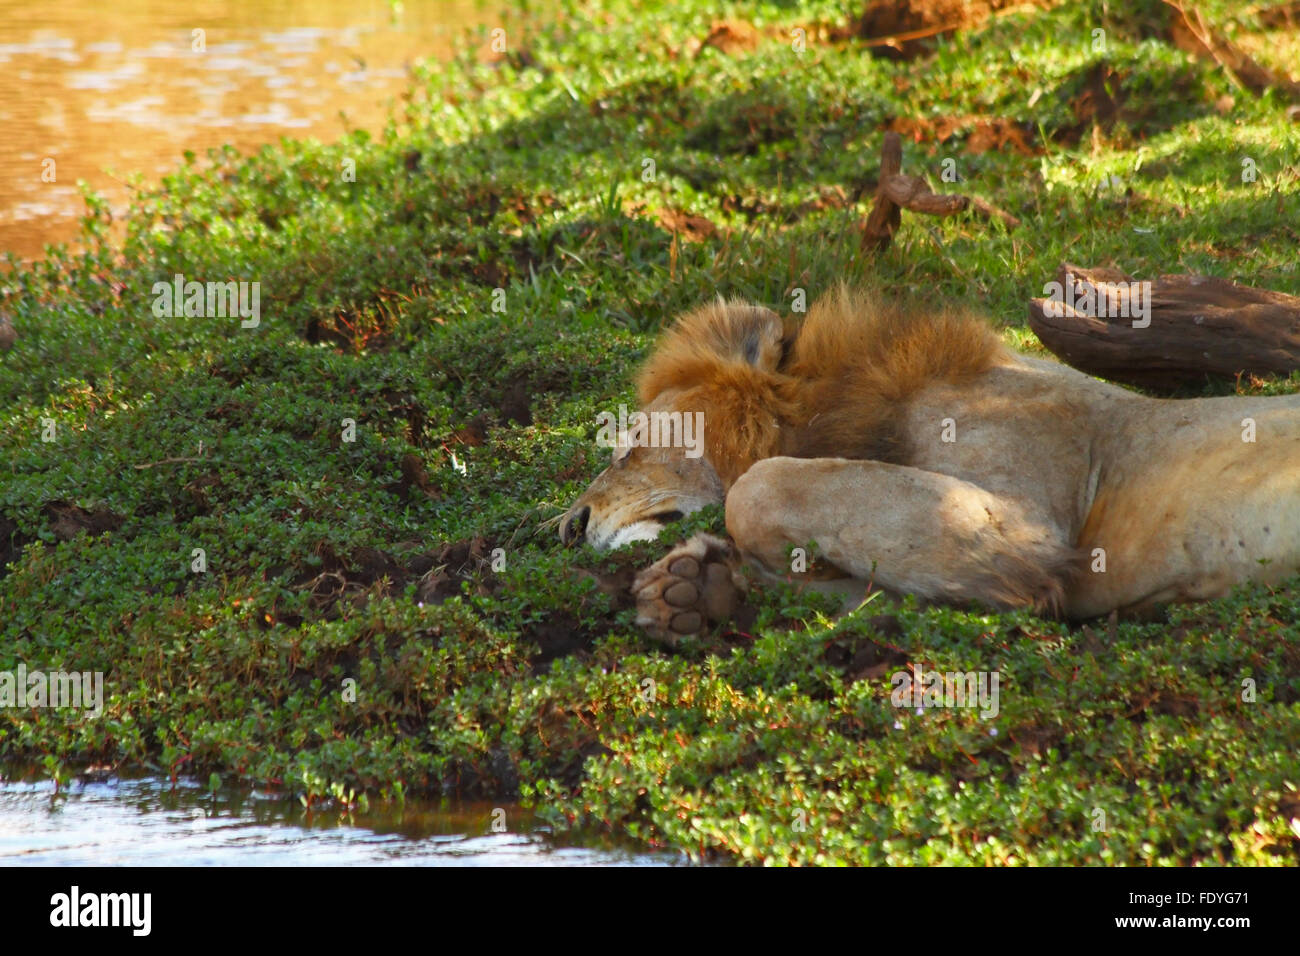 Un lion paresseux dort à côté d'une rivière Banque D'Images